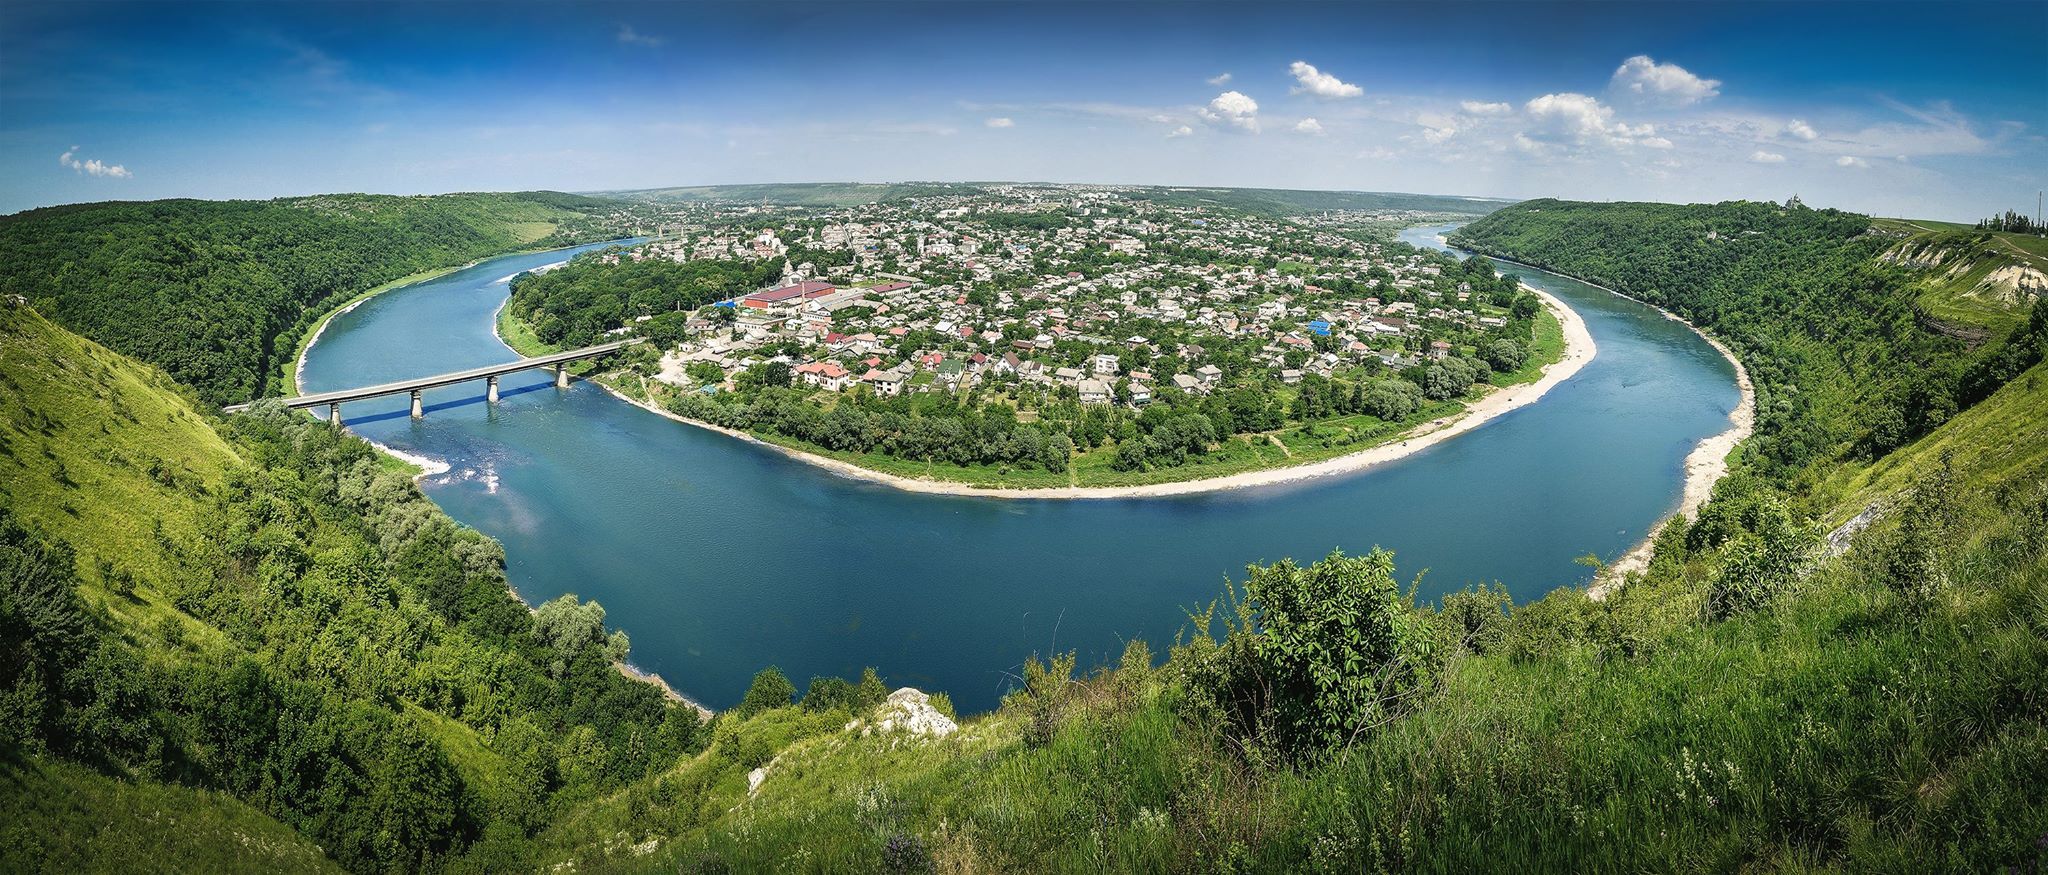 Залещики на Тернопольщине: чем поселок привлекал туристов со всего мира